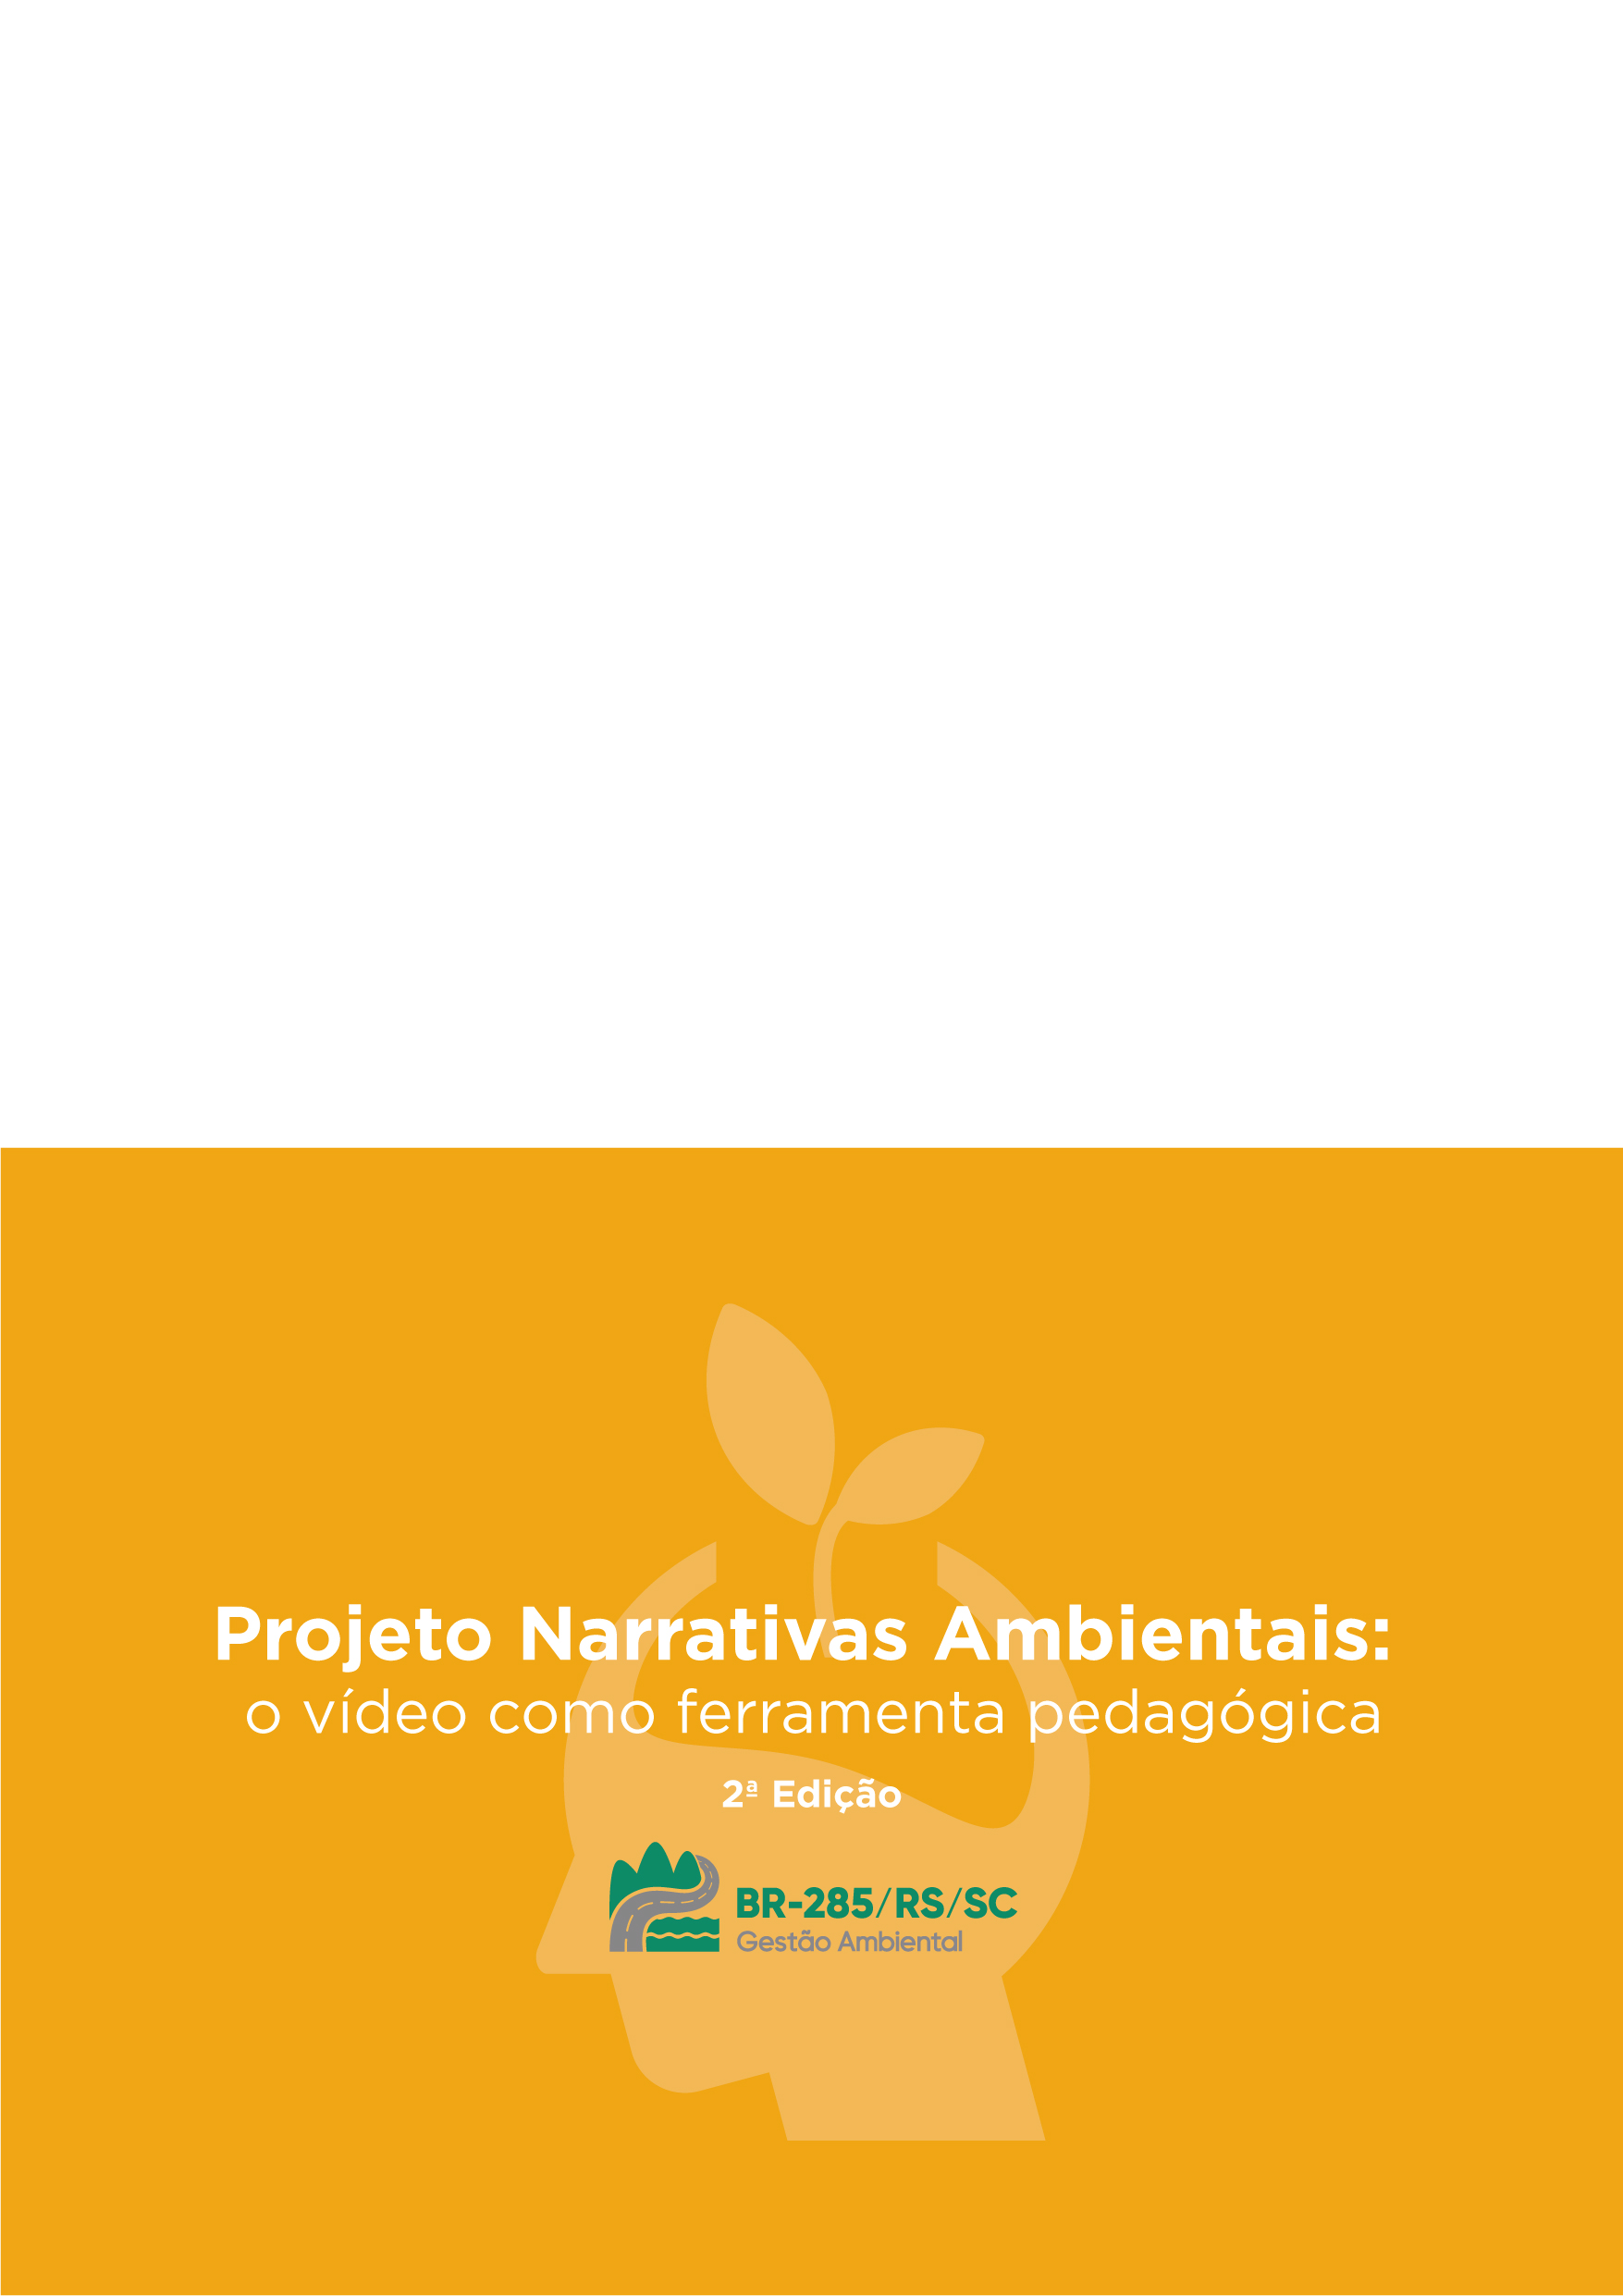 Projeto Narrativas Ambientais - 2ª edição